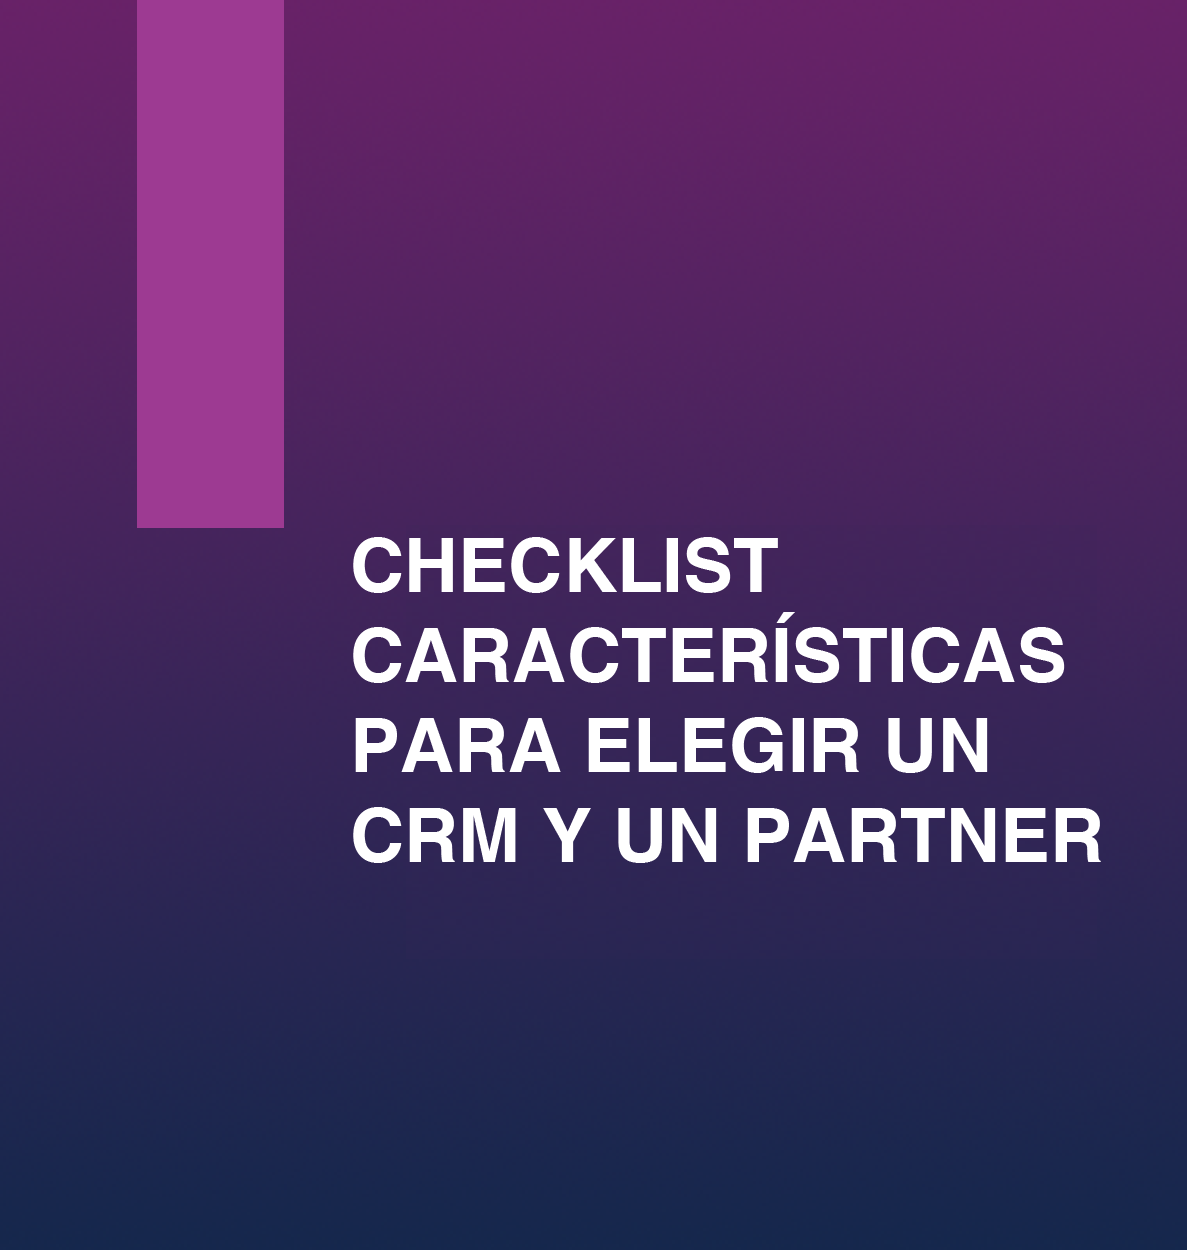 preview_checklist_caracteristicas_para_elegir_un_crm_y_un_partner-01